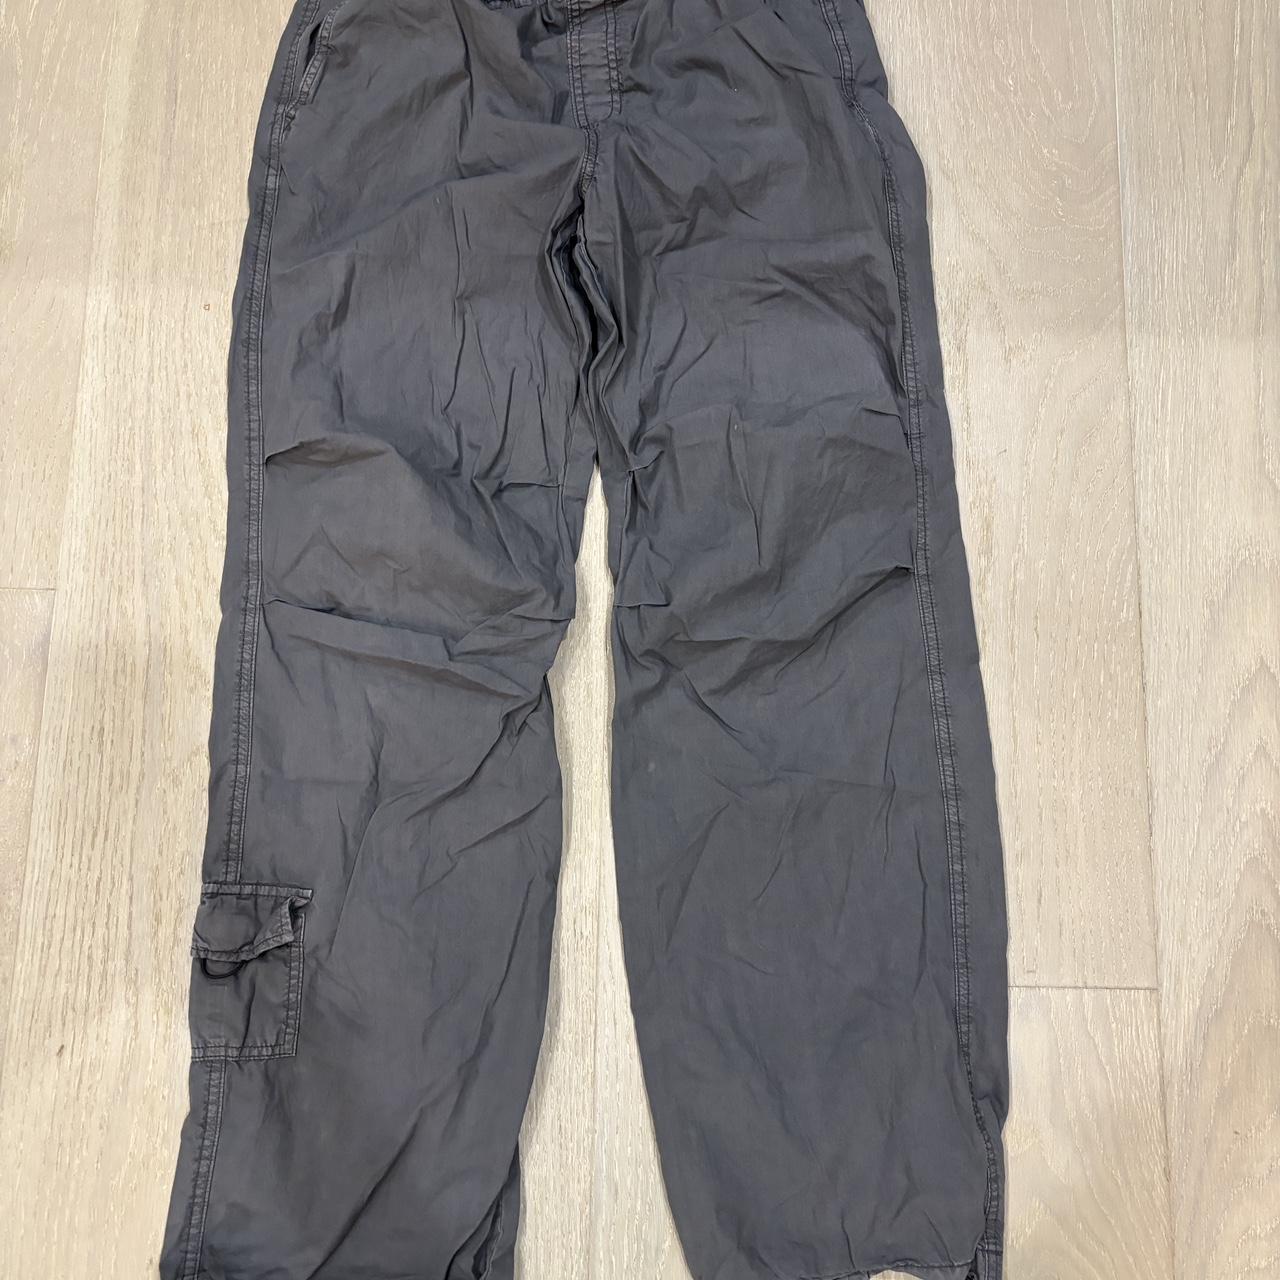 GARAGE grey low rise parachute pants size: XS but - Depop